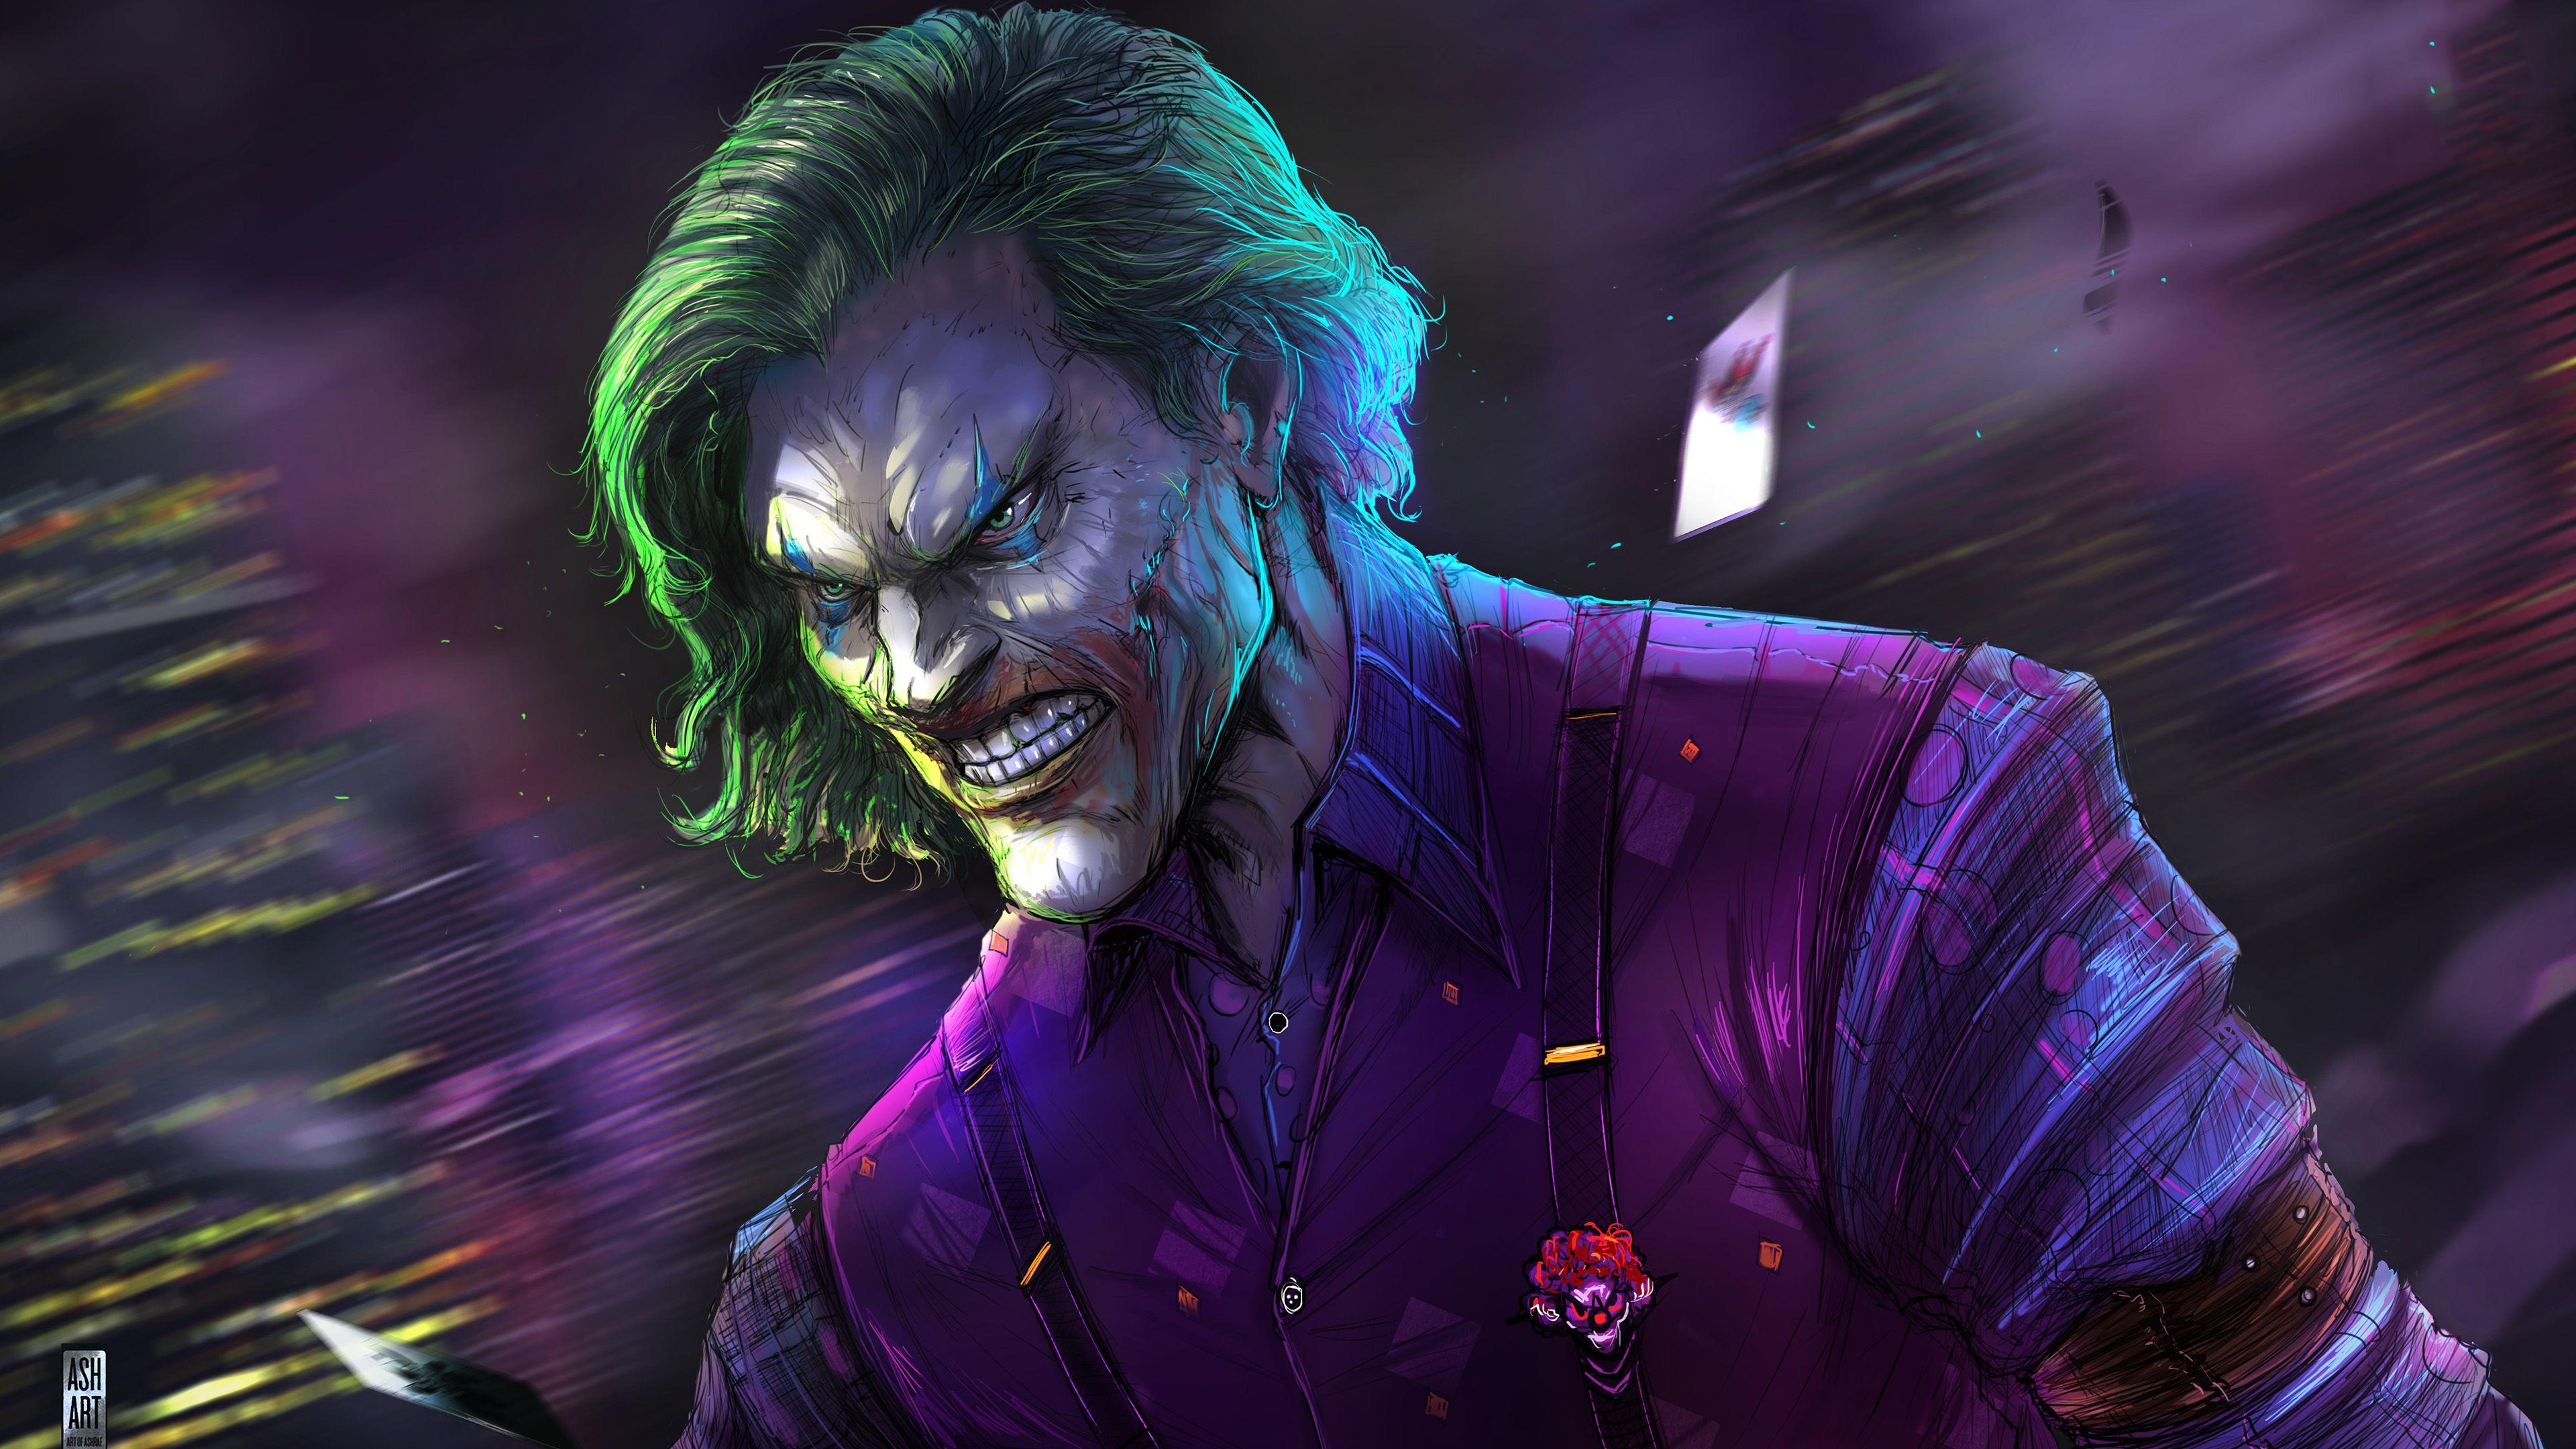 Joker Artwork 4k 2019 superheroes wallpaper, joker